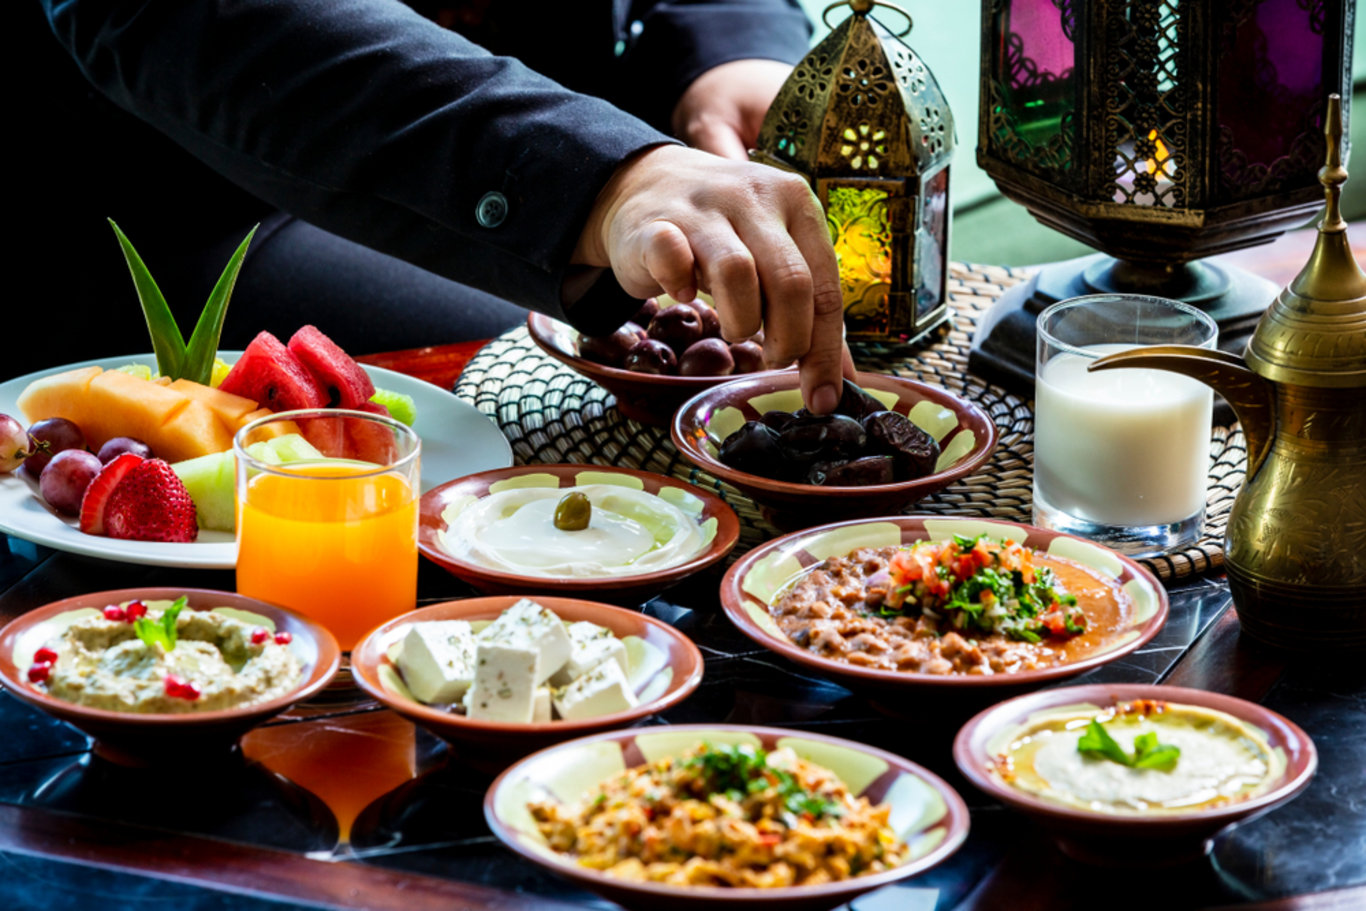 Oruç tutarken kilo vermek mümkün! 'Ramazan'da nasıl kilo verilir?' diyenlere 14 sağlıklı öneri